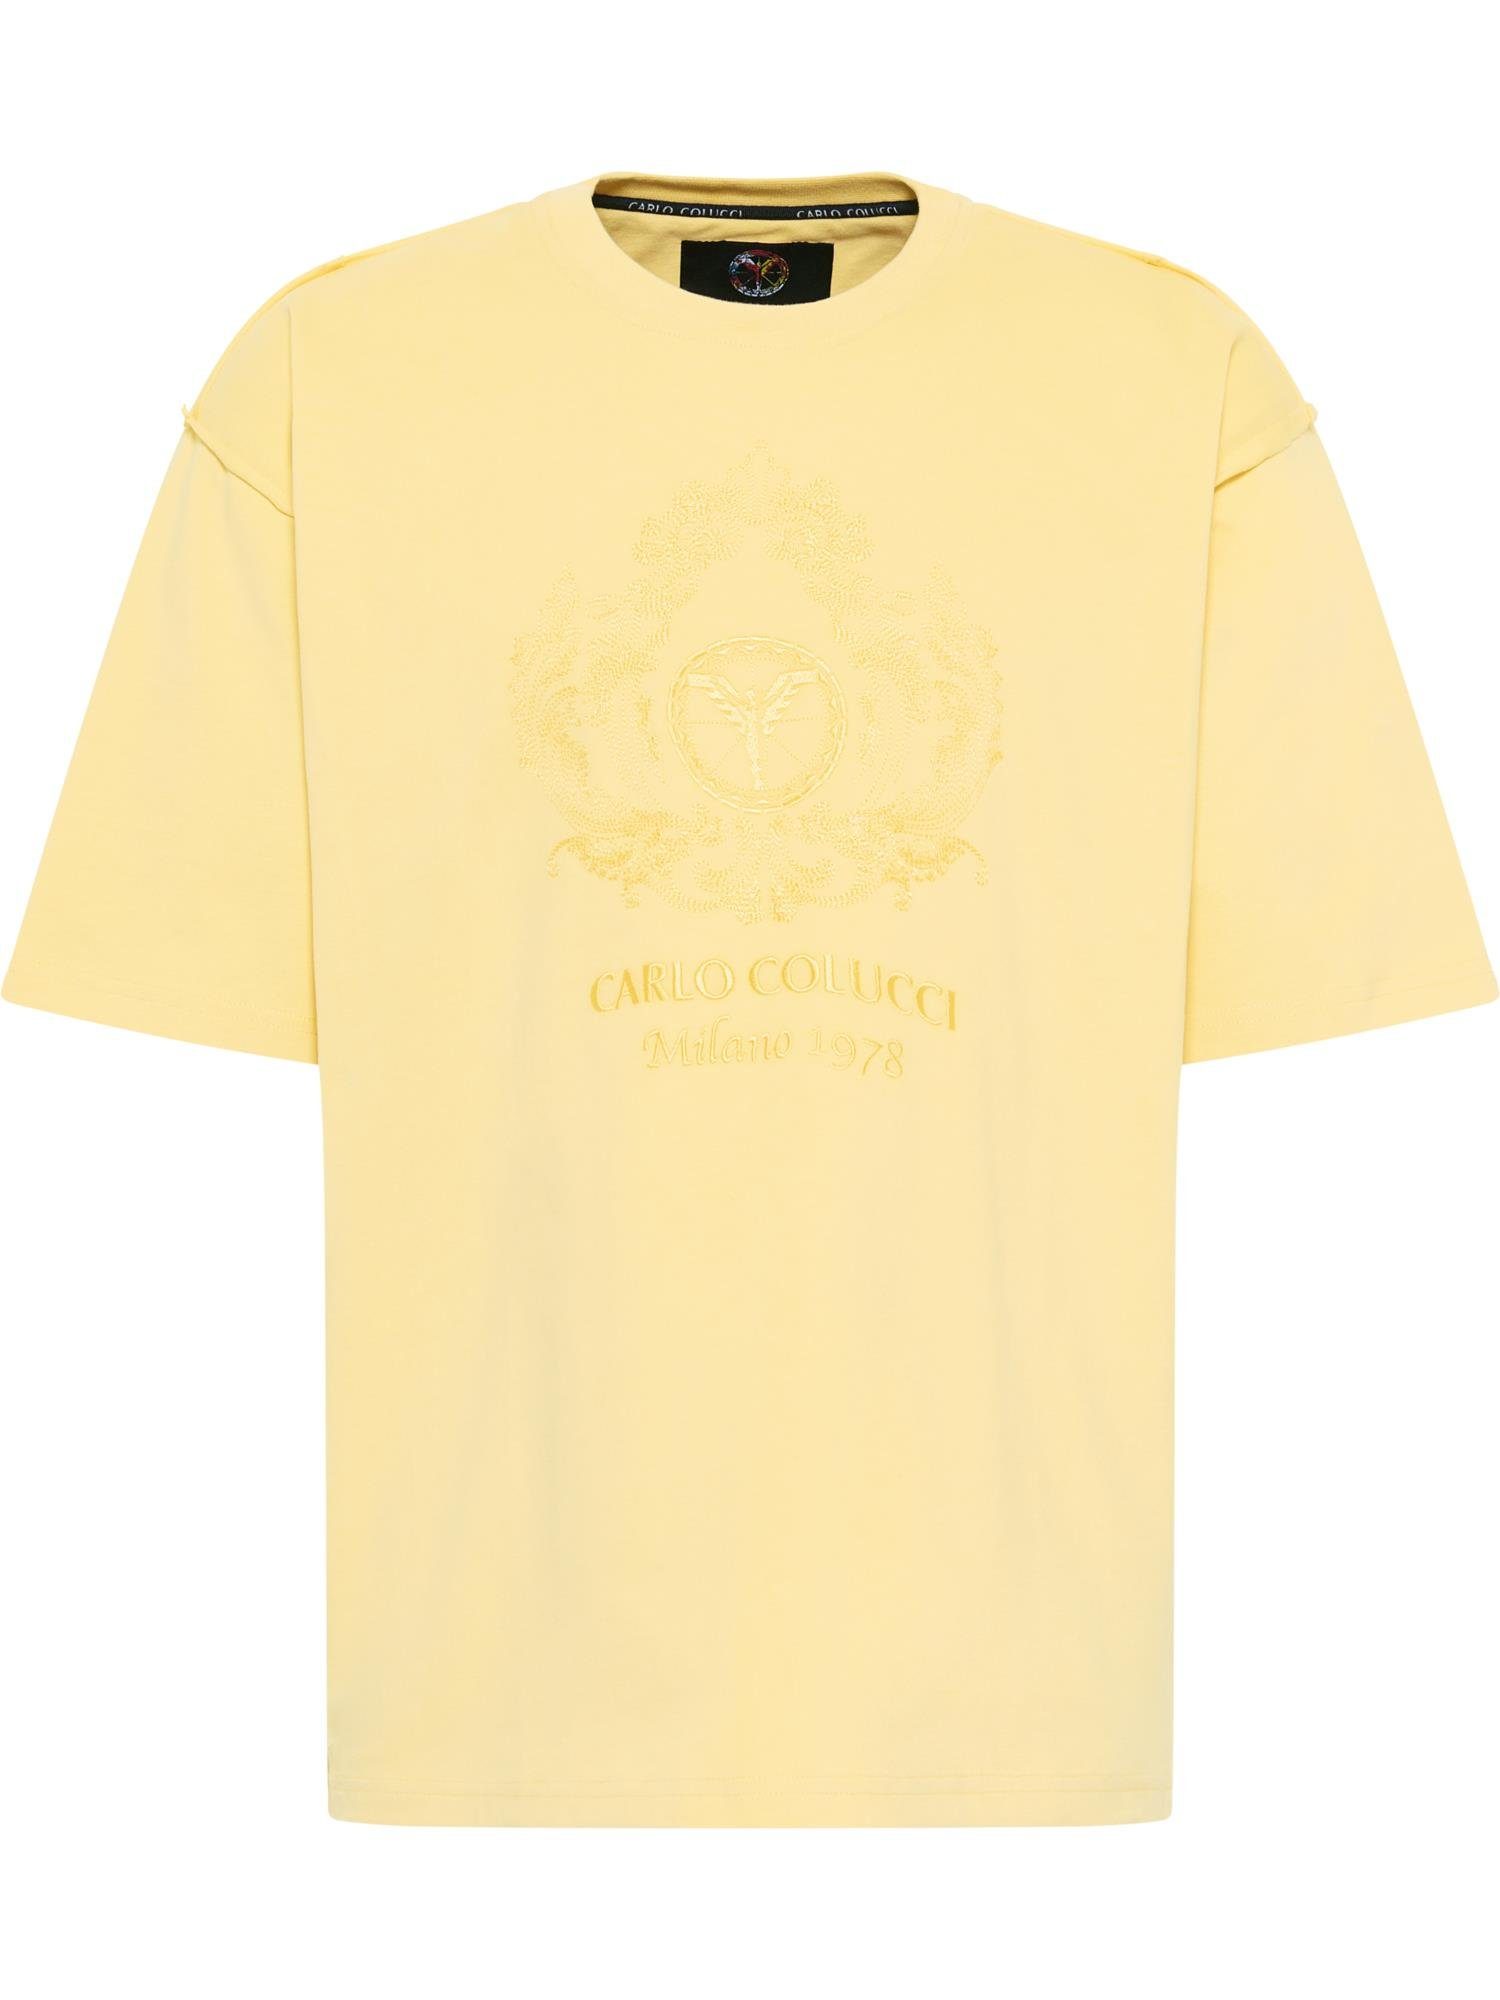 De T-Shirt Bortoli Gelb COLUCCI CARLO